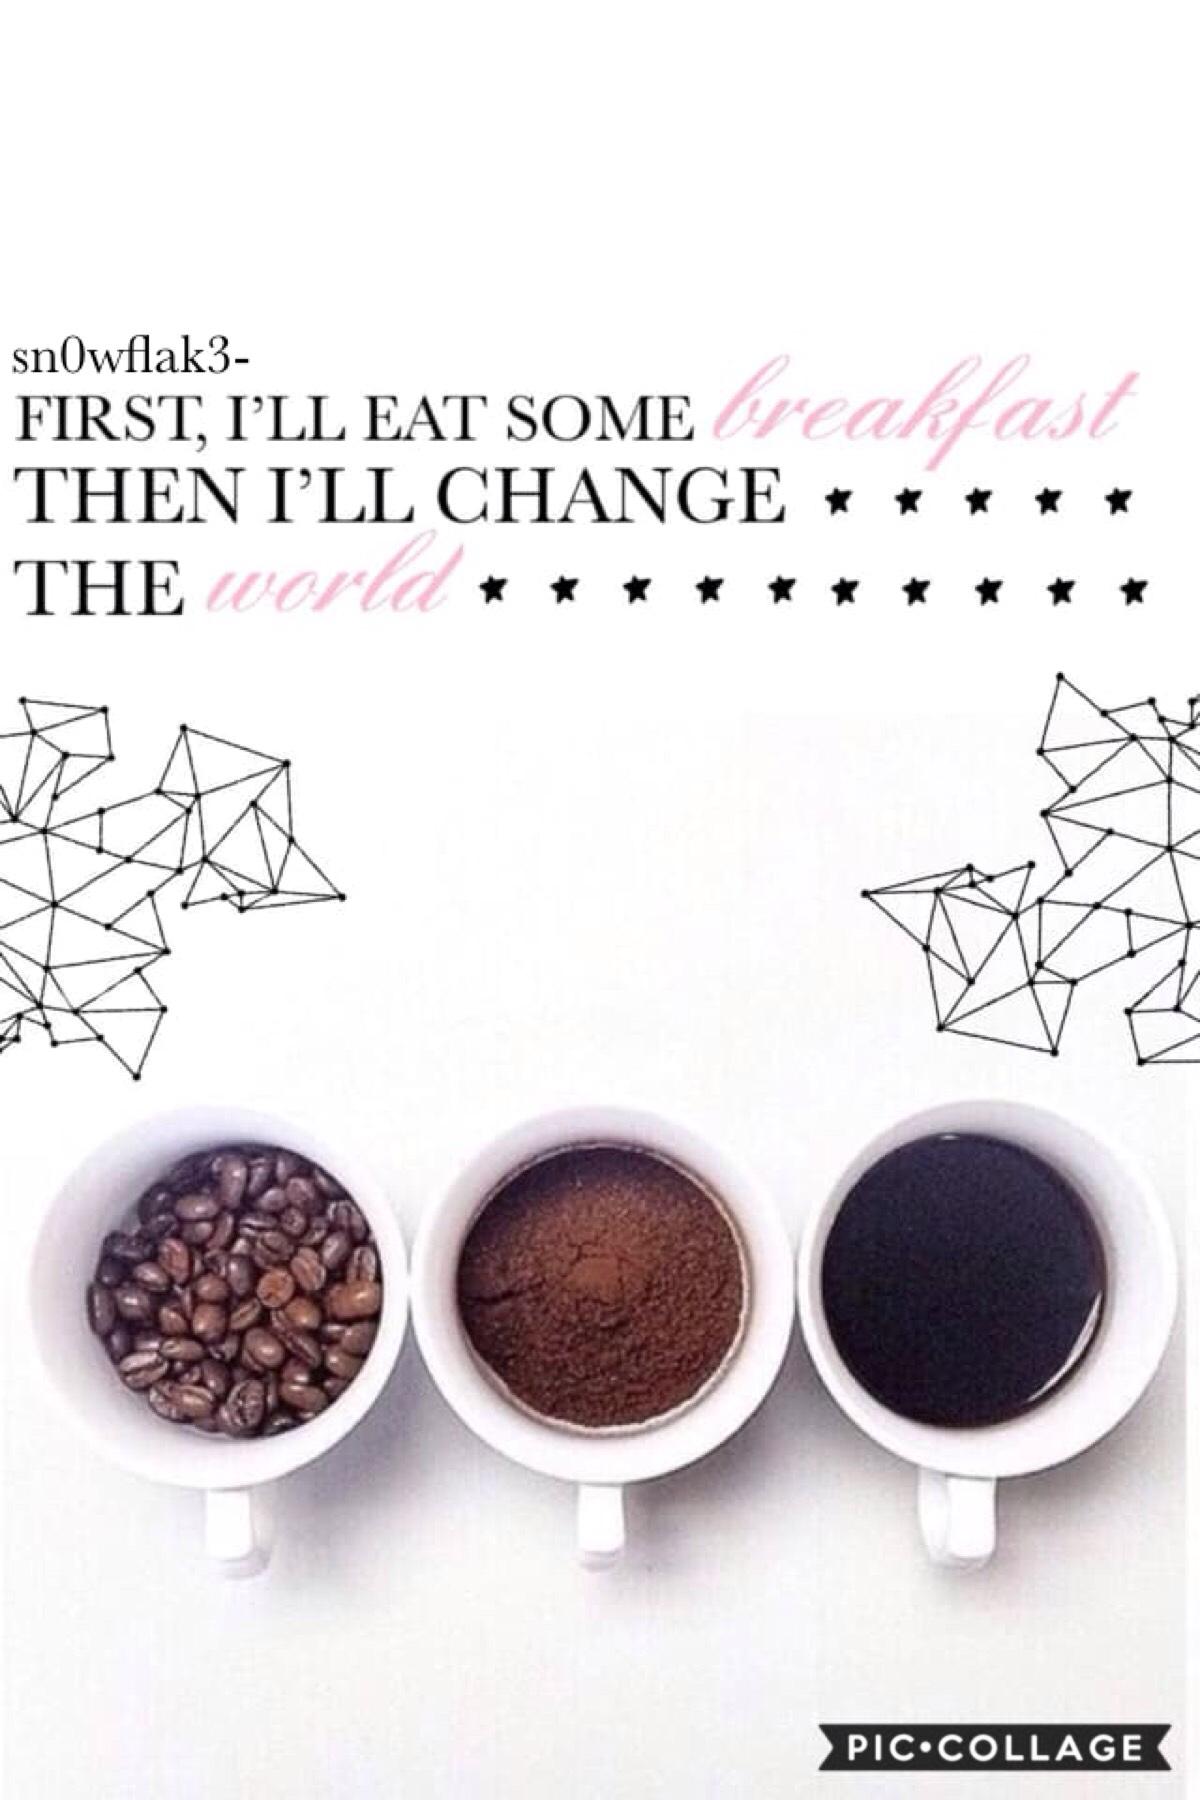 🐳tap🐳
Rate 1-10
QOTD: fav breakfast?
AOTD: waffles & crepes!🍪